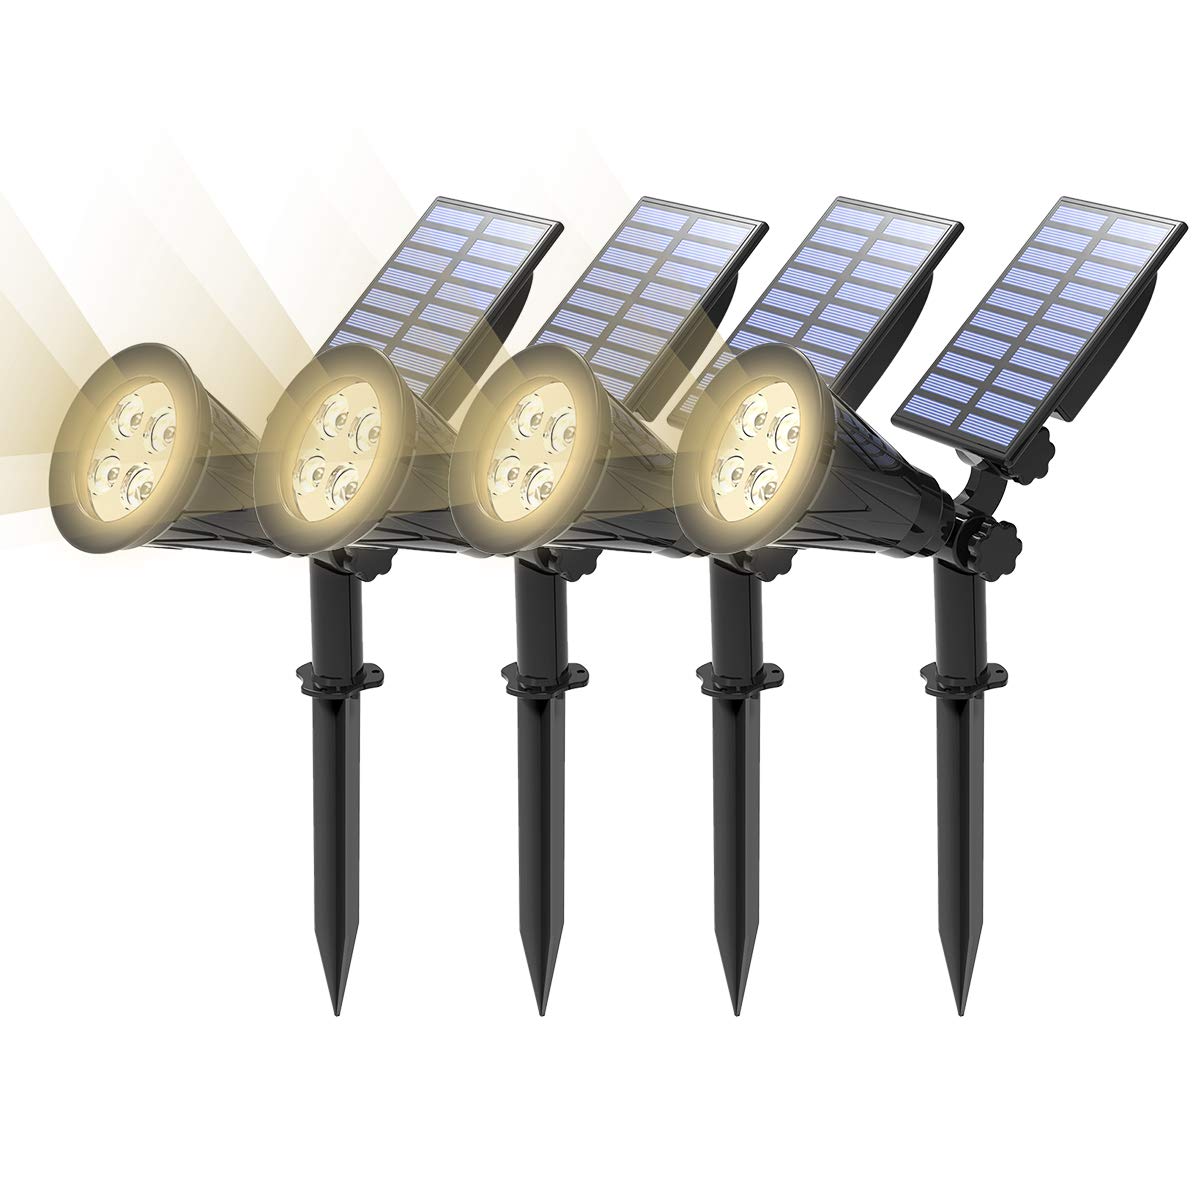 T-SUN 4 Stück LED Solarleuchten, Wasserdicht Drahtlos Solarbetriebene Gartenleuchten, 2 Beleuchtungsmodi, Auto-on/off, Natürliches Weiß 4000K, Outdoor Wandleuchte für Hof, Rasen, Wege, Auffahrt.